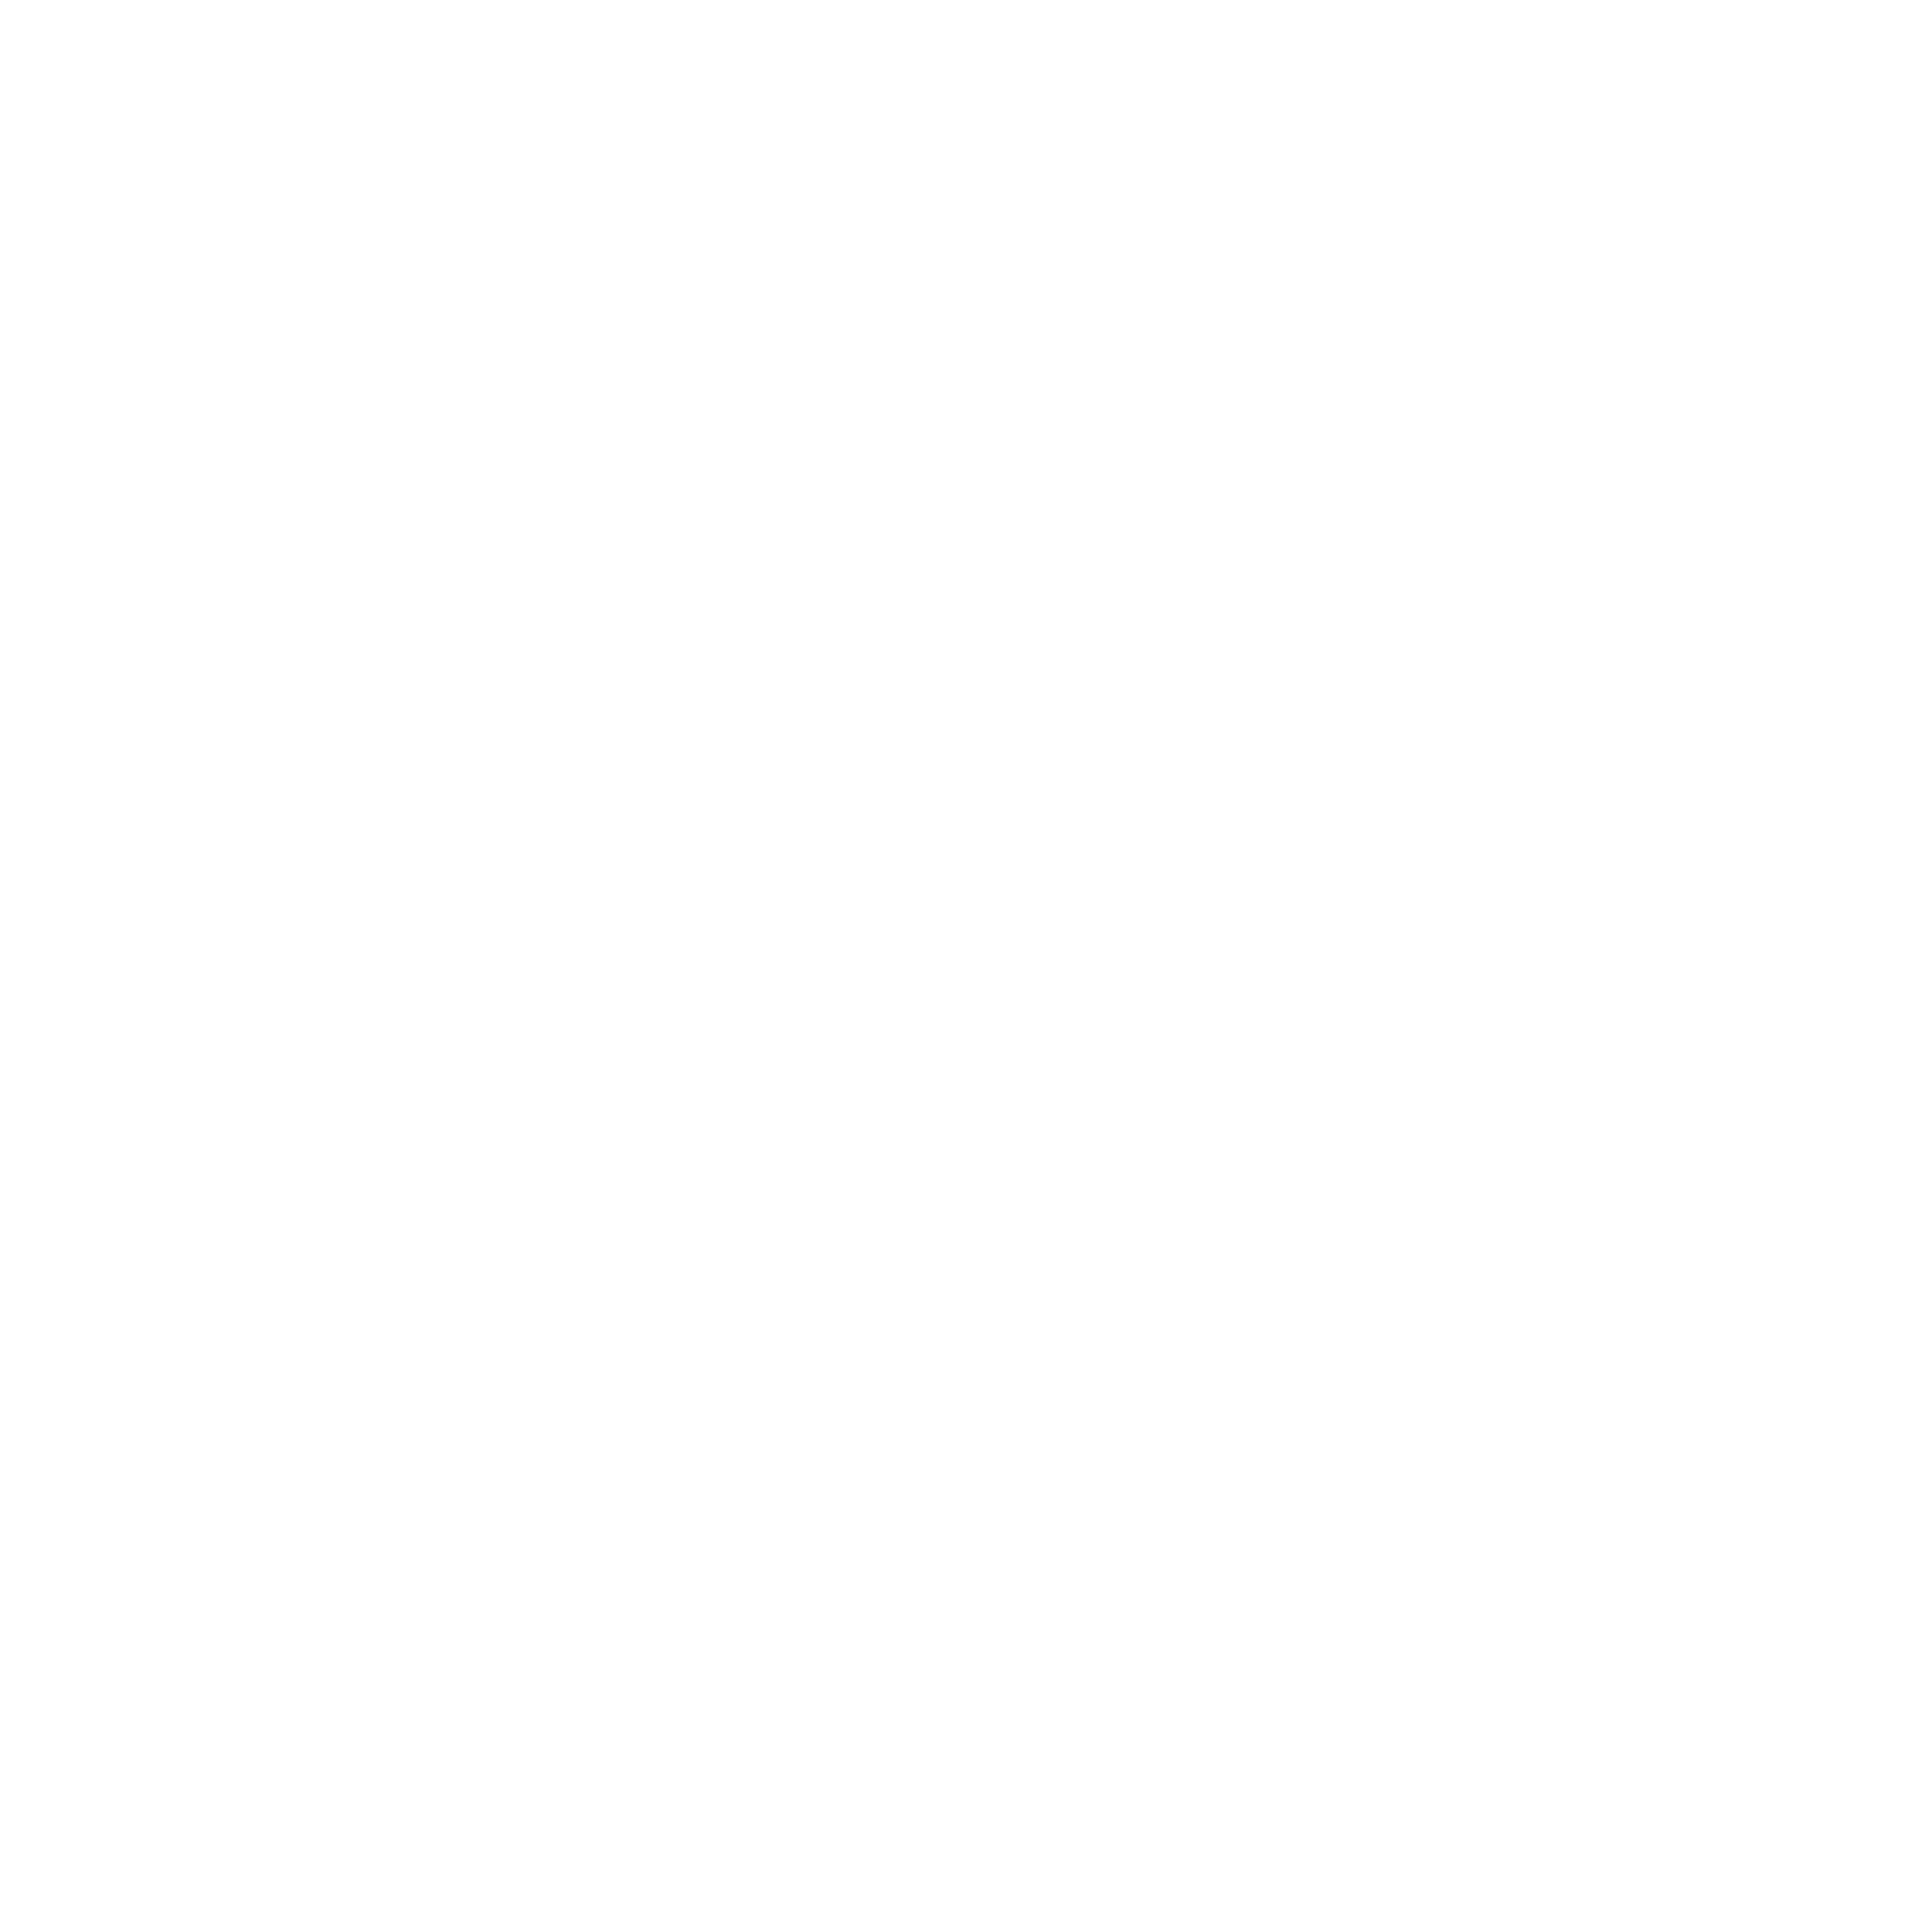 TechExeter CIC